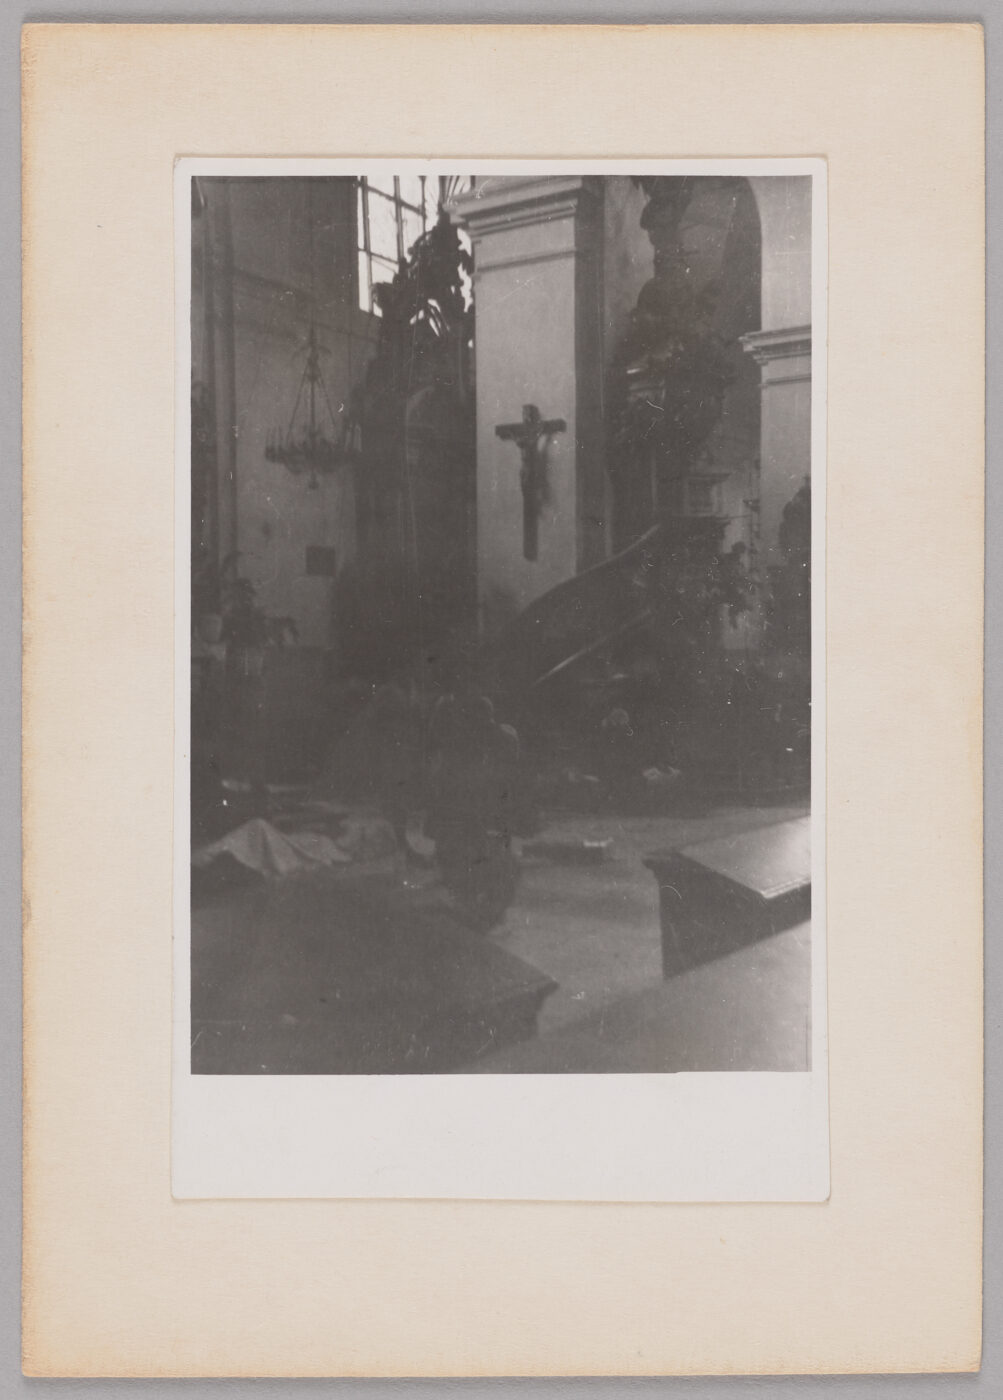 Szpital św. Jacka w kościele, Jul. Z. Sowiński, sierpień 1944, ze zbiorów Muzeum Warszawy